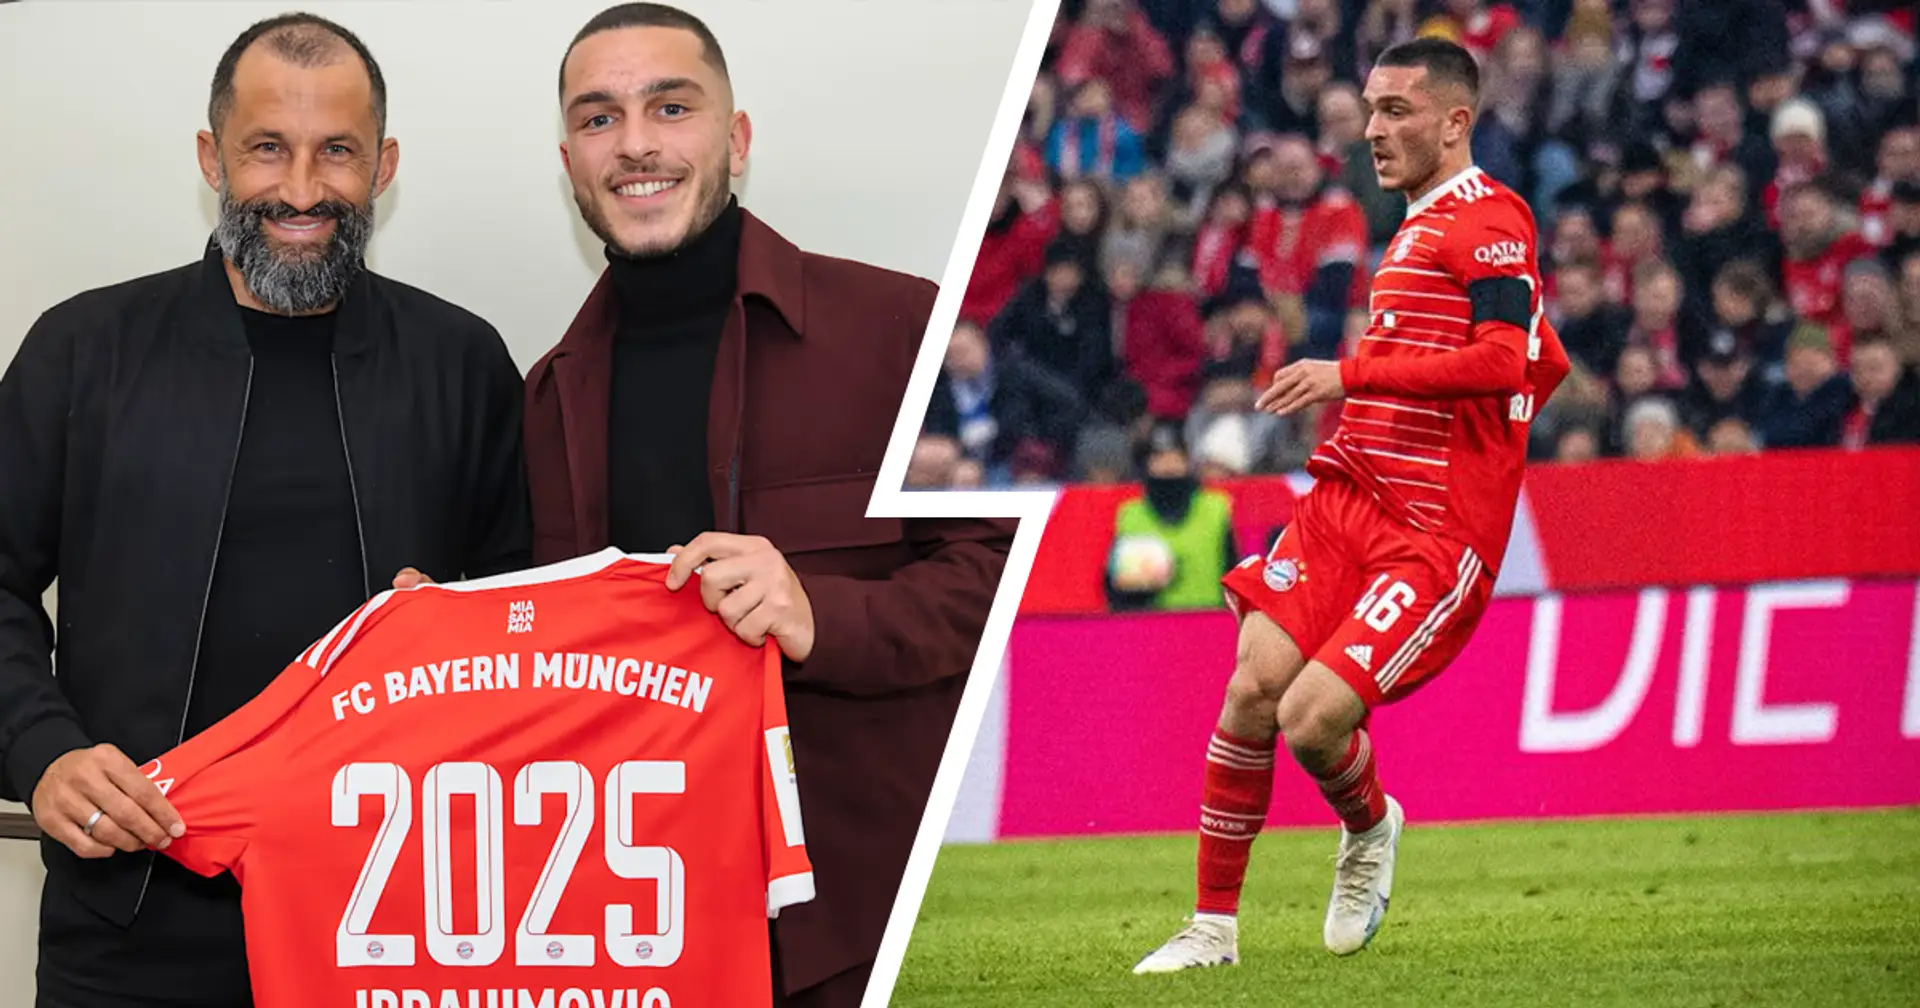 Arijon Ibrahimovic ist der neue Star des FC Bayern: Bosse der Münchner sind mit ihm sehr zufrieden